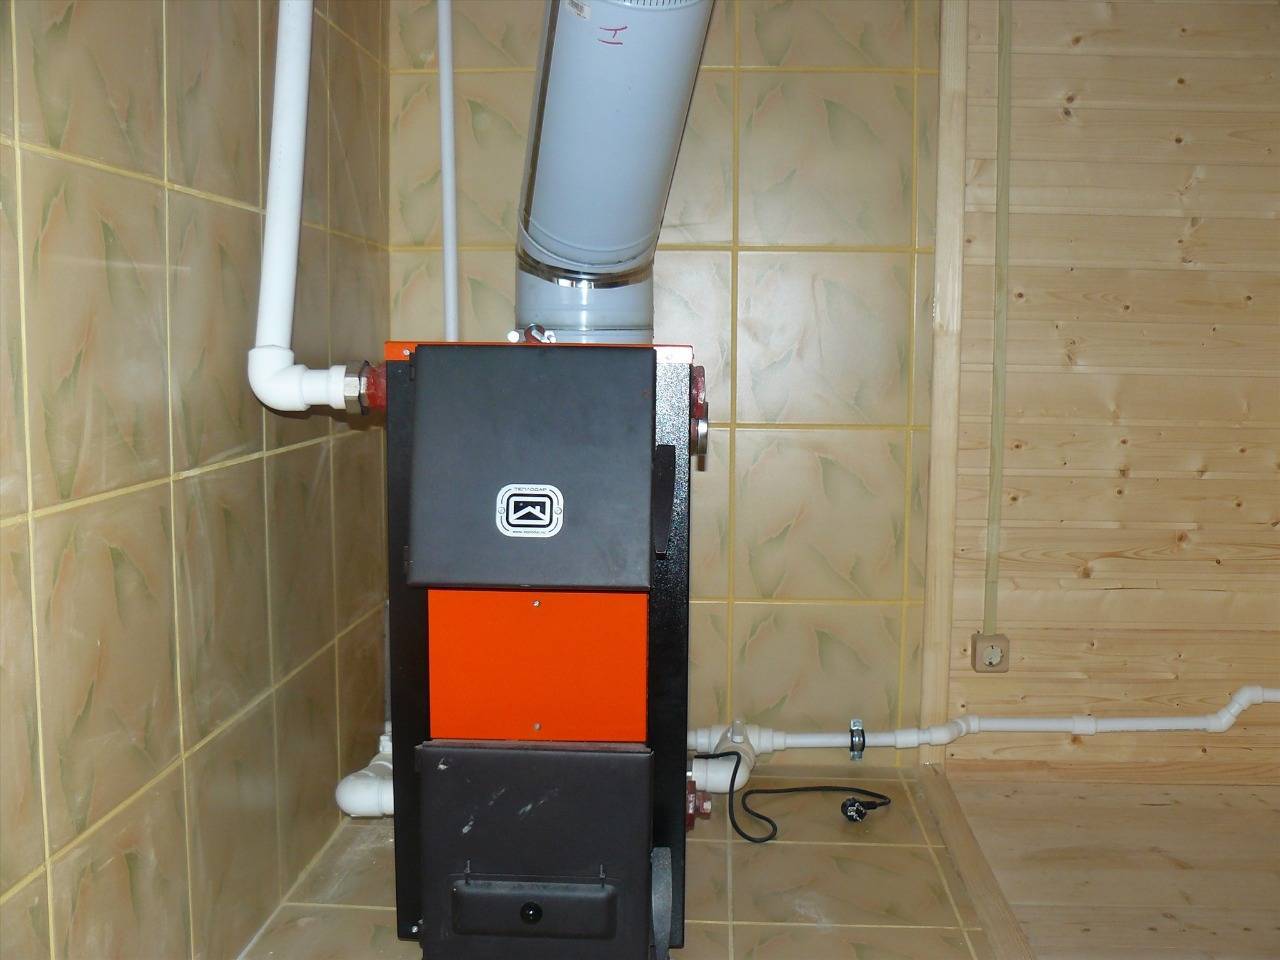 Напольный газовый котел сиберия: как устроен, технические характеристики, а также отзывы и инструкция по эксплуатации